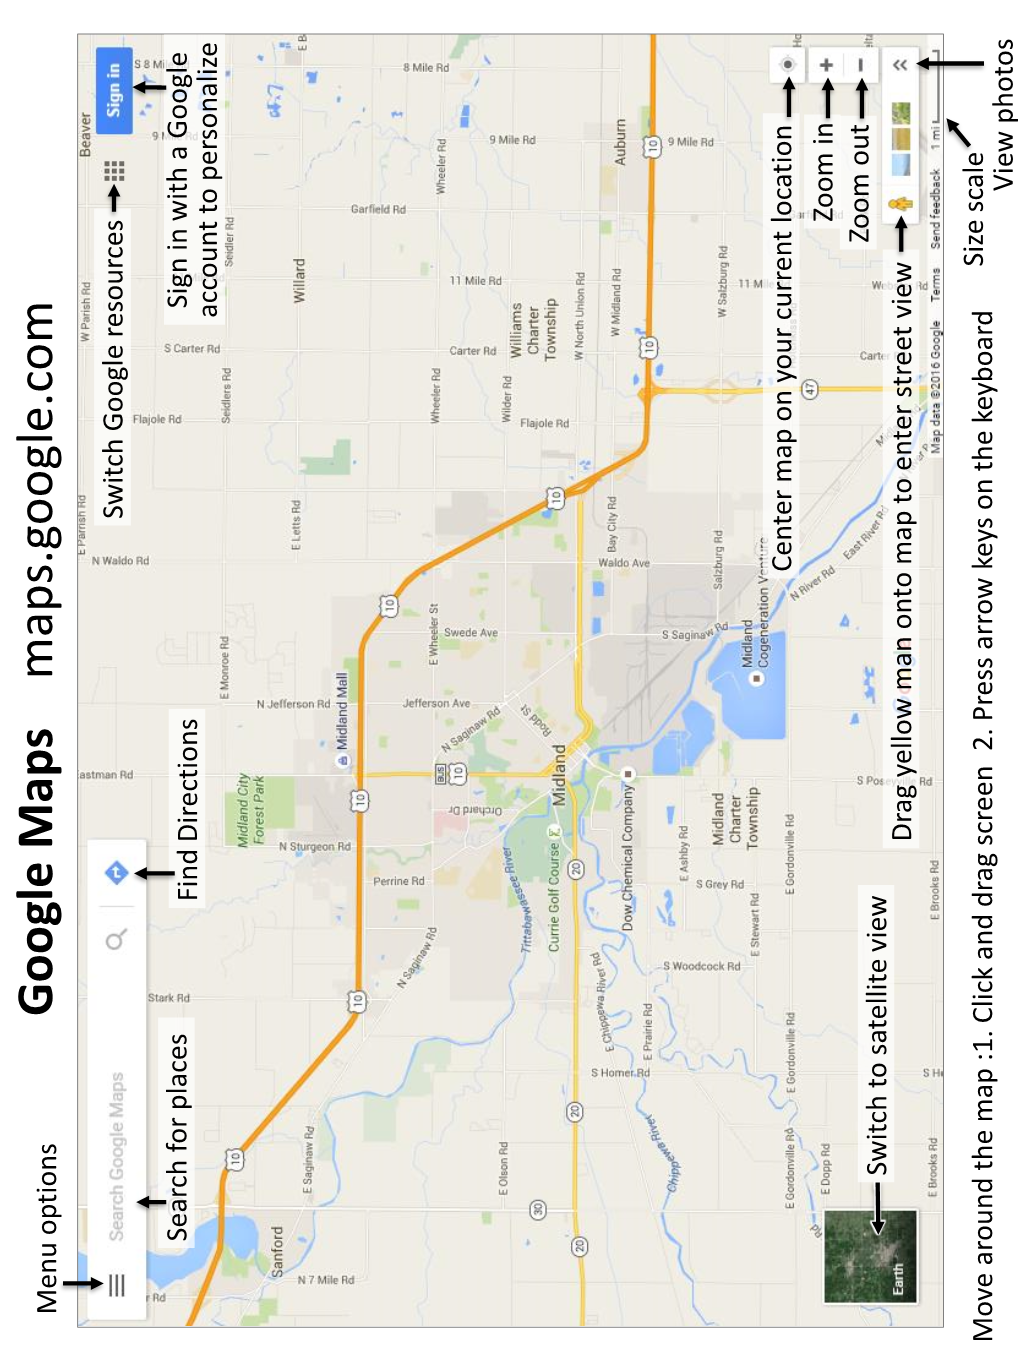 Google Maps Maps.Google.Com